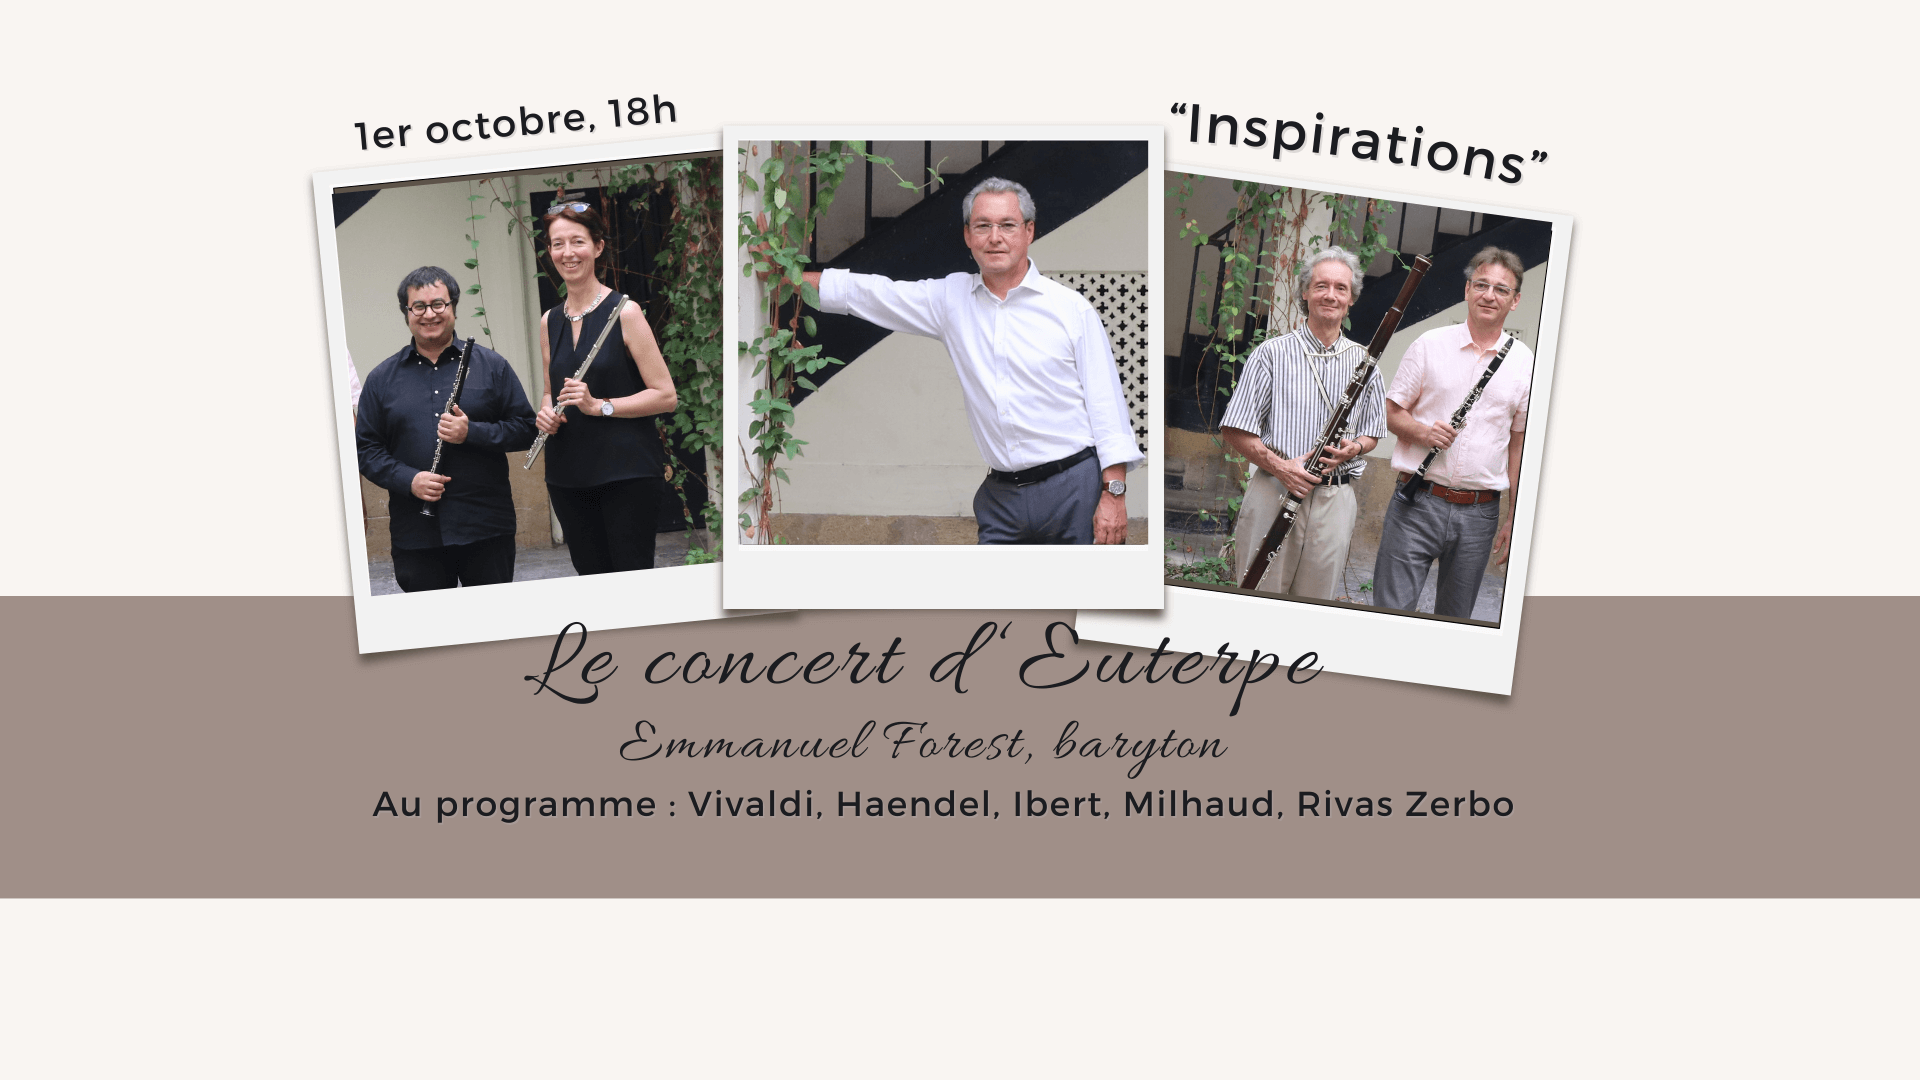 Le concert d'Euterpe : Inspirations